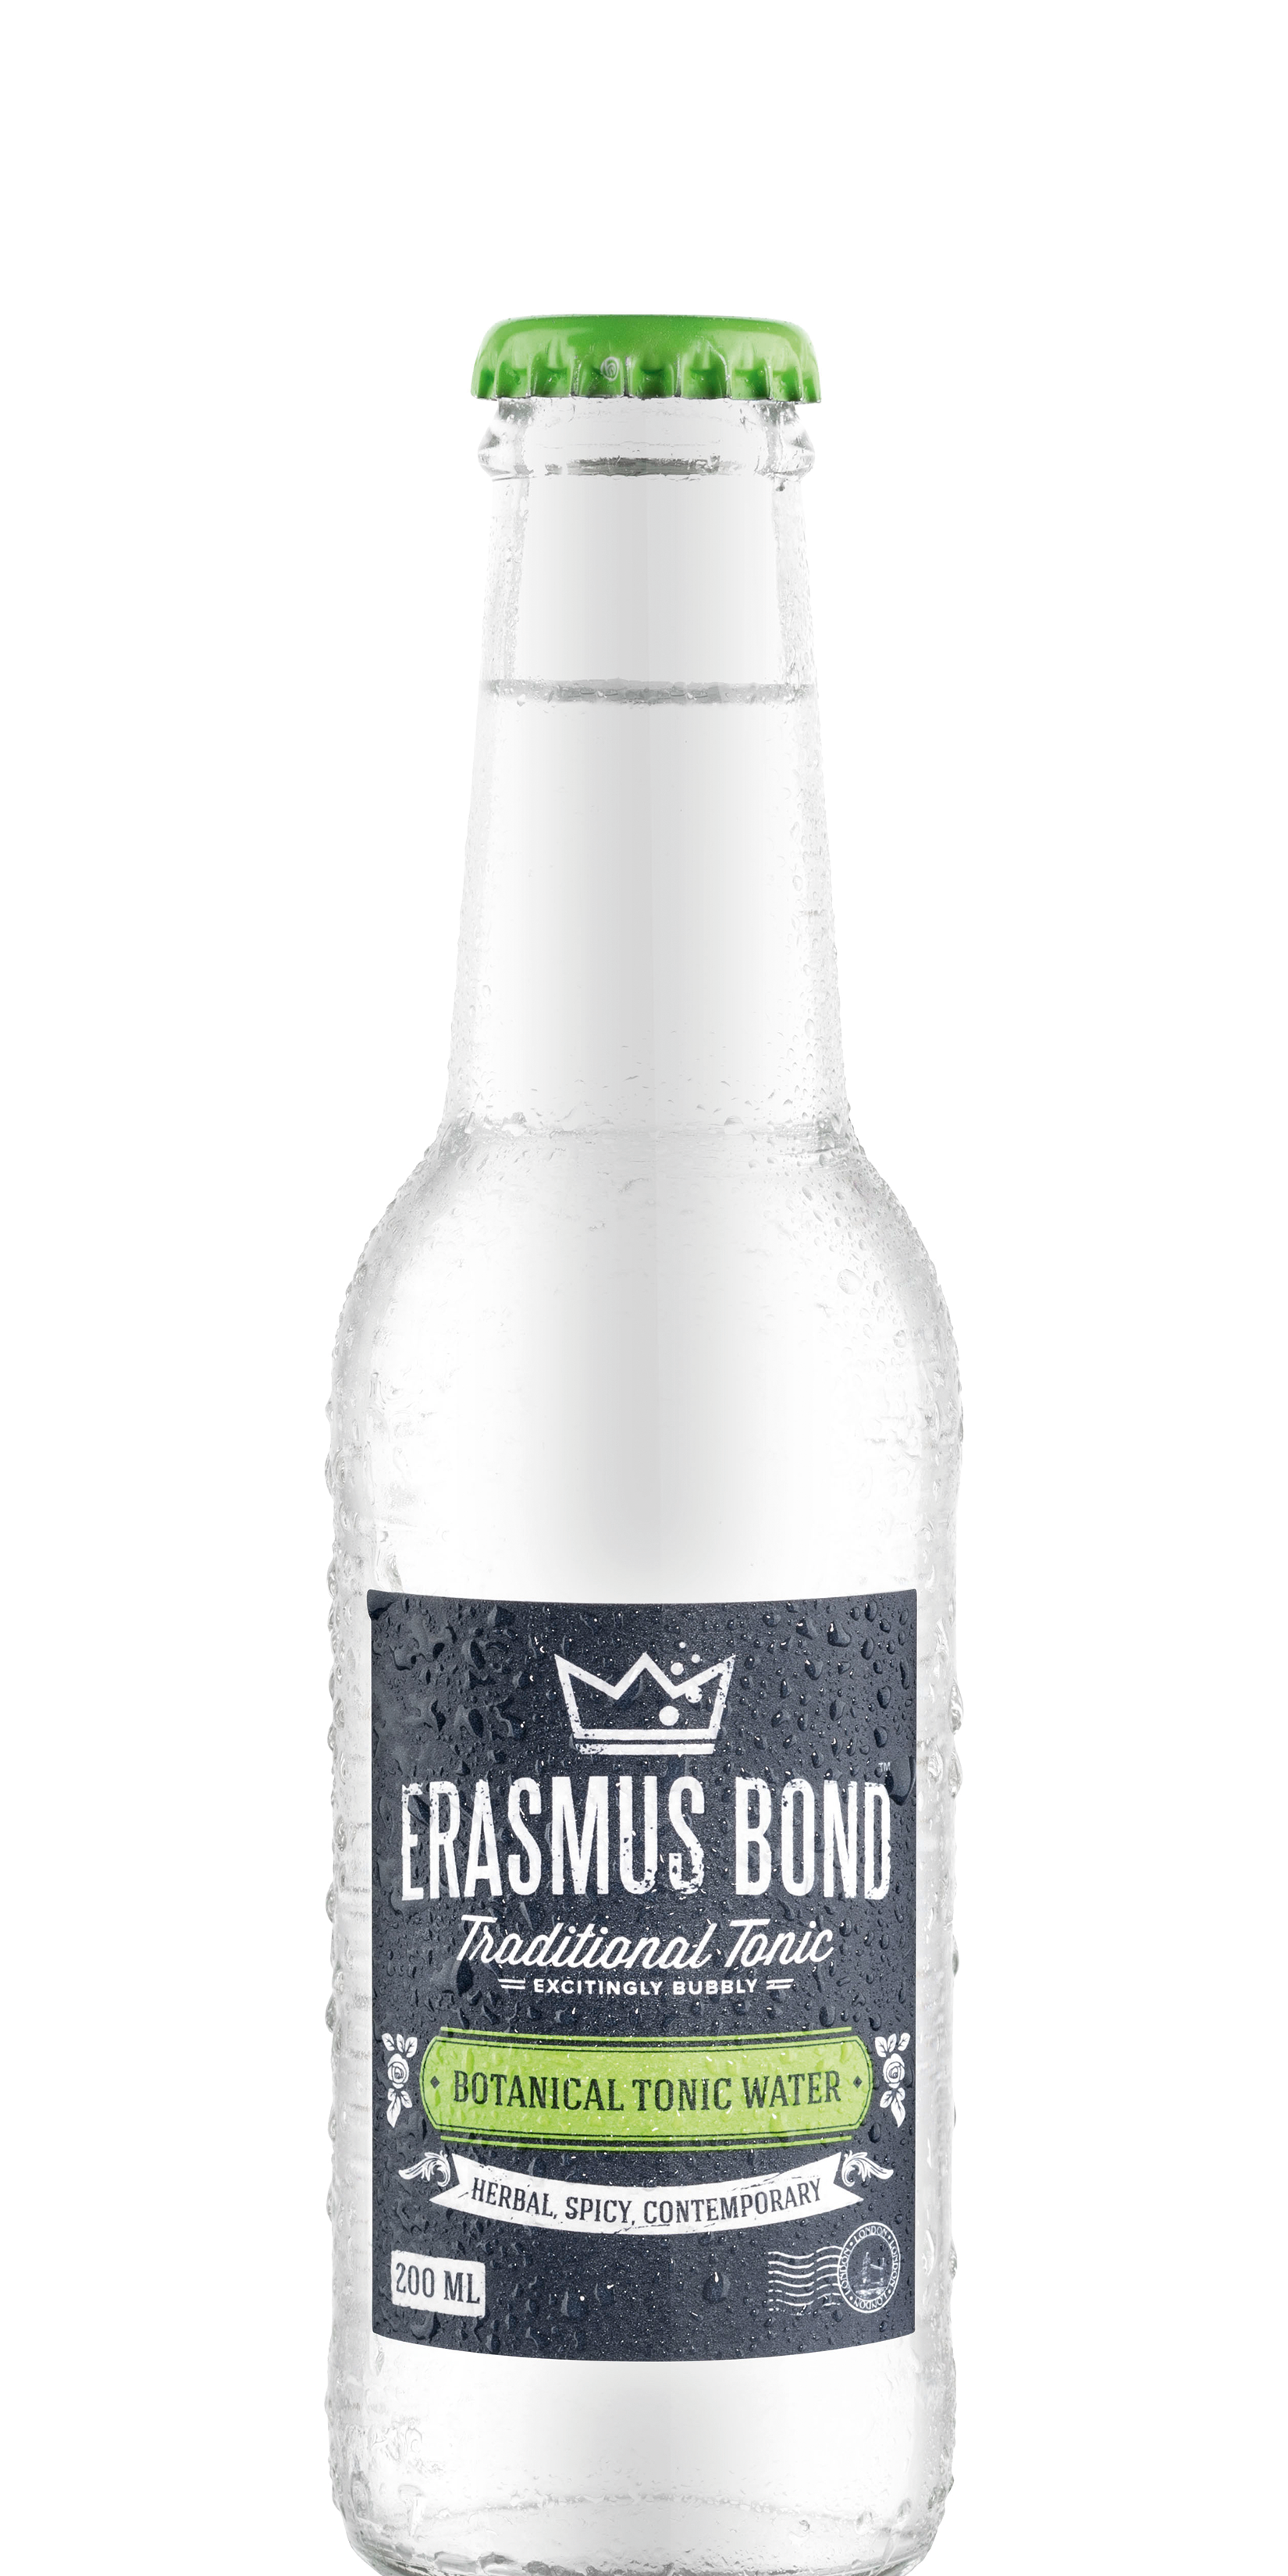 Erasmus-Bond-Botanical-Tonic-Water-200ml.png